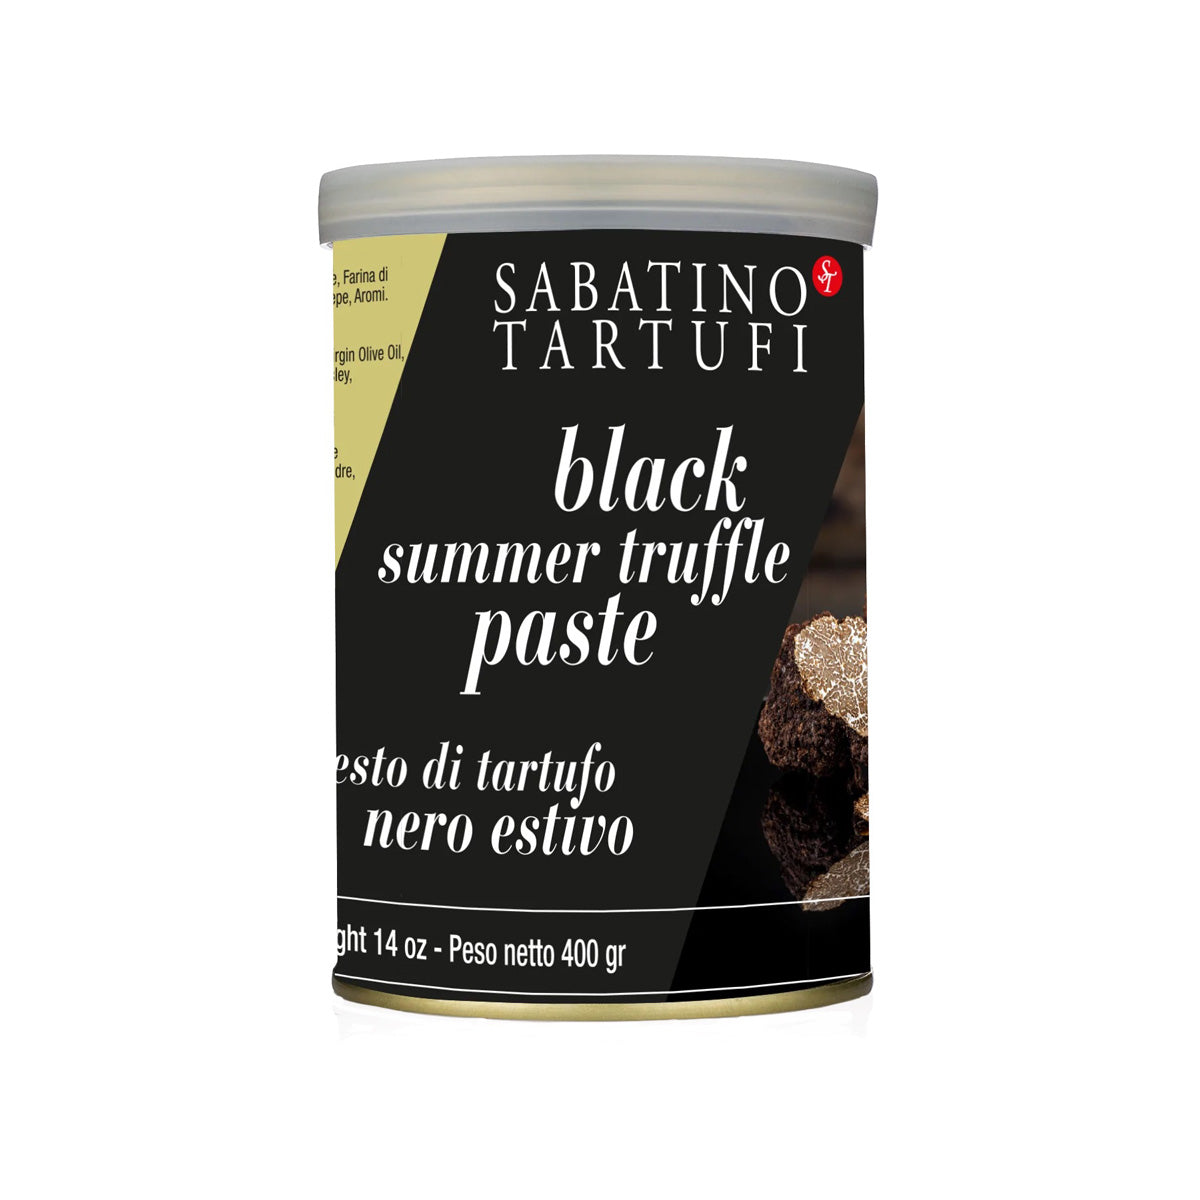 Sabatino Tartufi Black Summer Truffle Paste